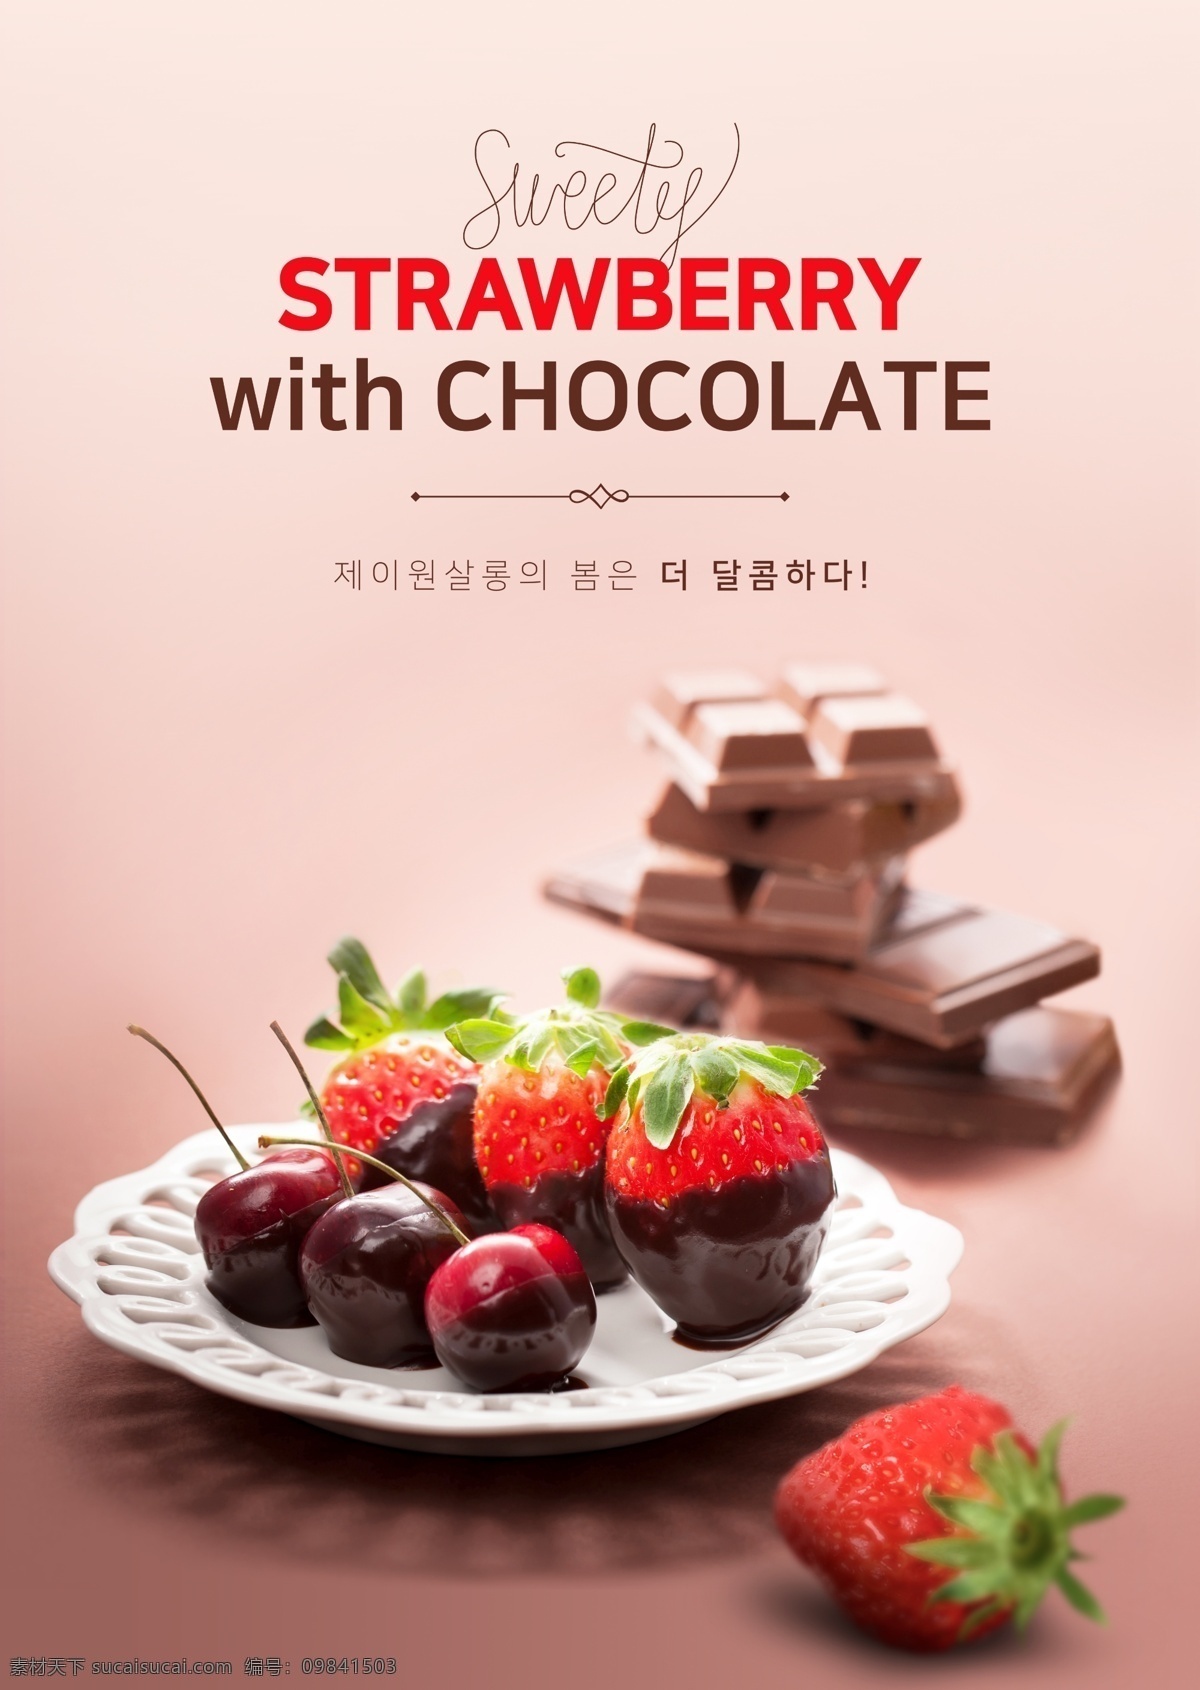 美味 樱桃 草莓 巧克力 点心 商业海报 海报素材 美食海报 草莓巧克力 水果巧克力 水果 果浆 美食海报设计 韩系海报